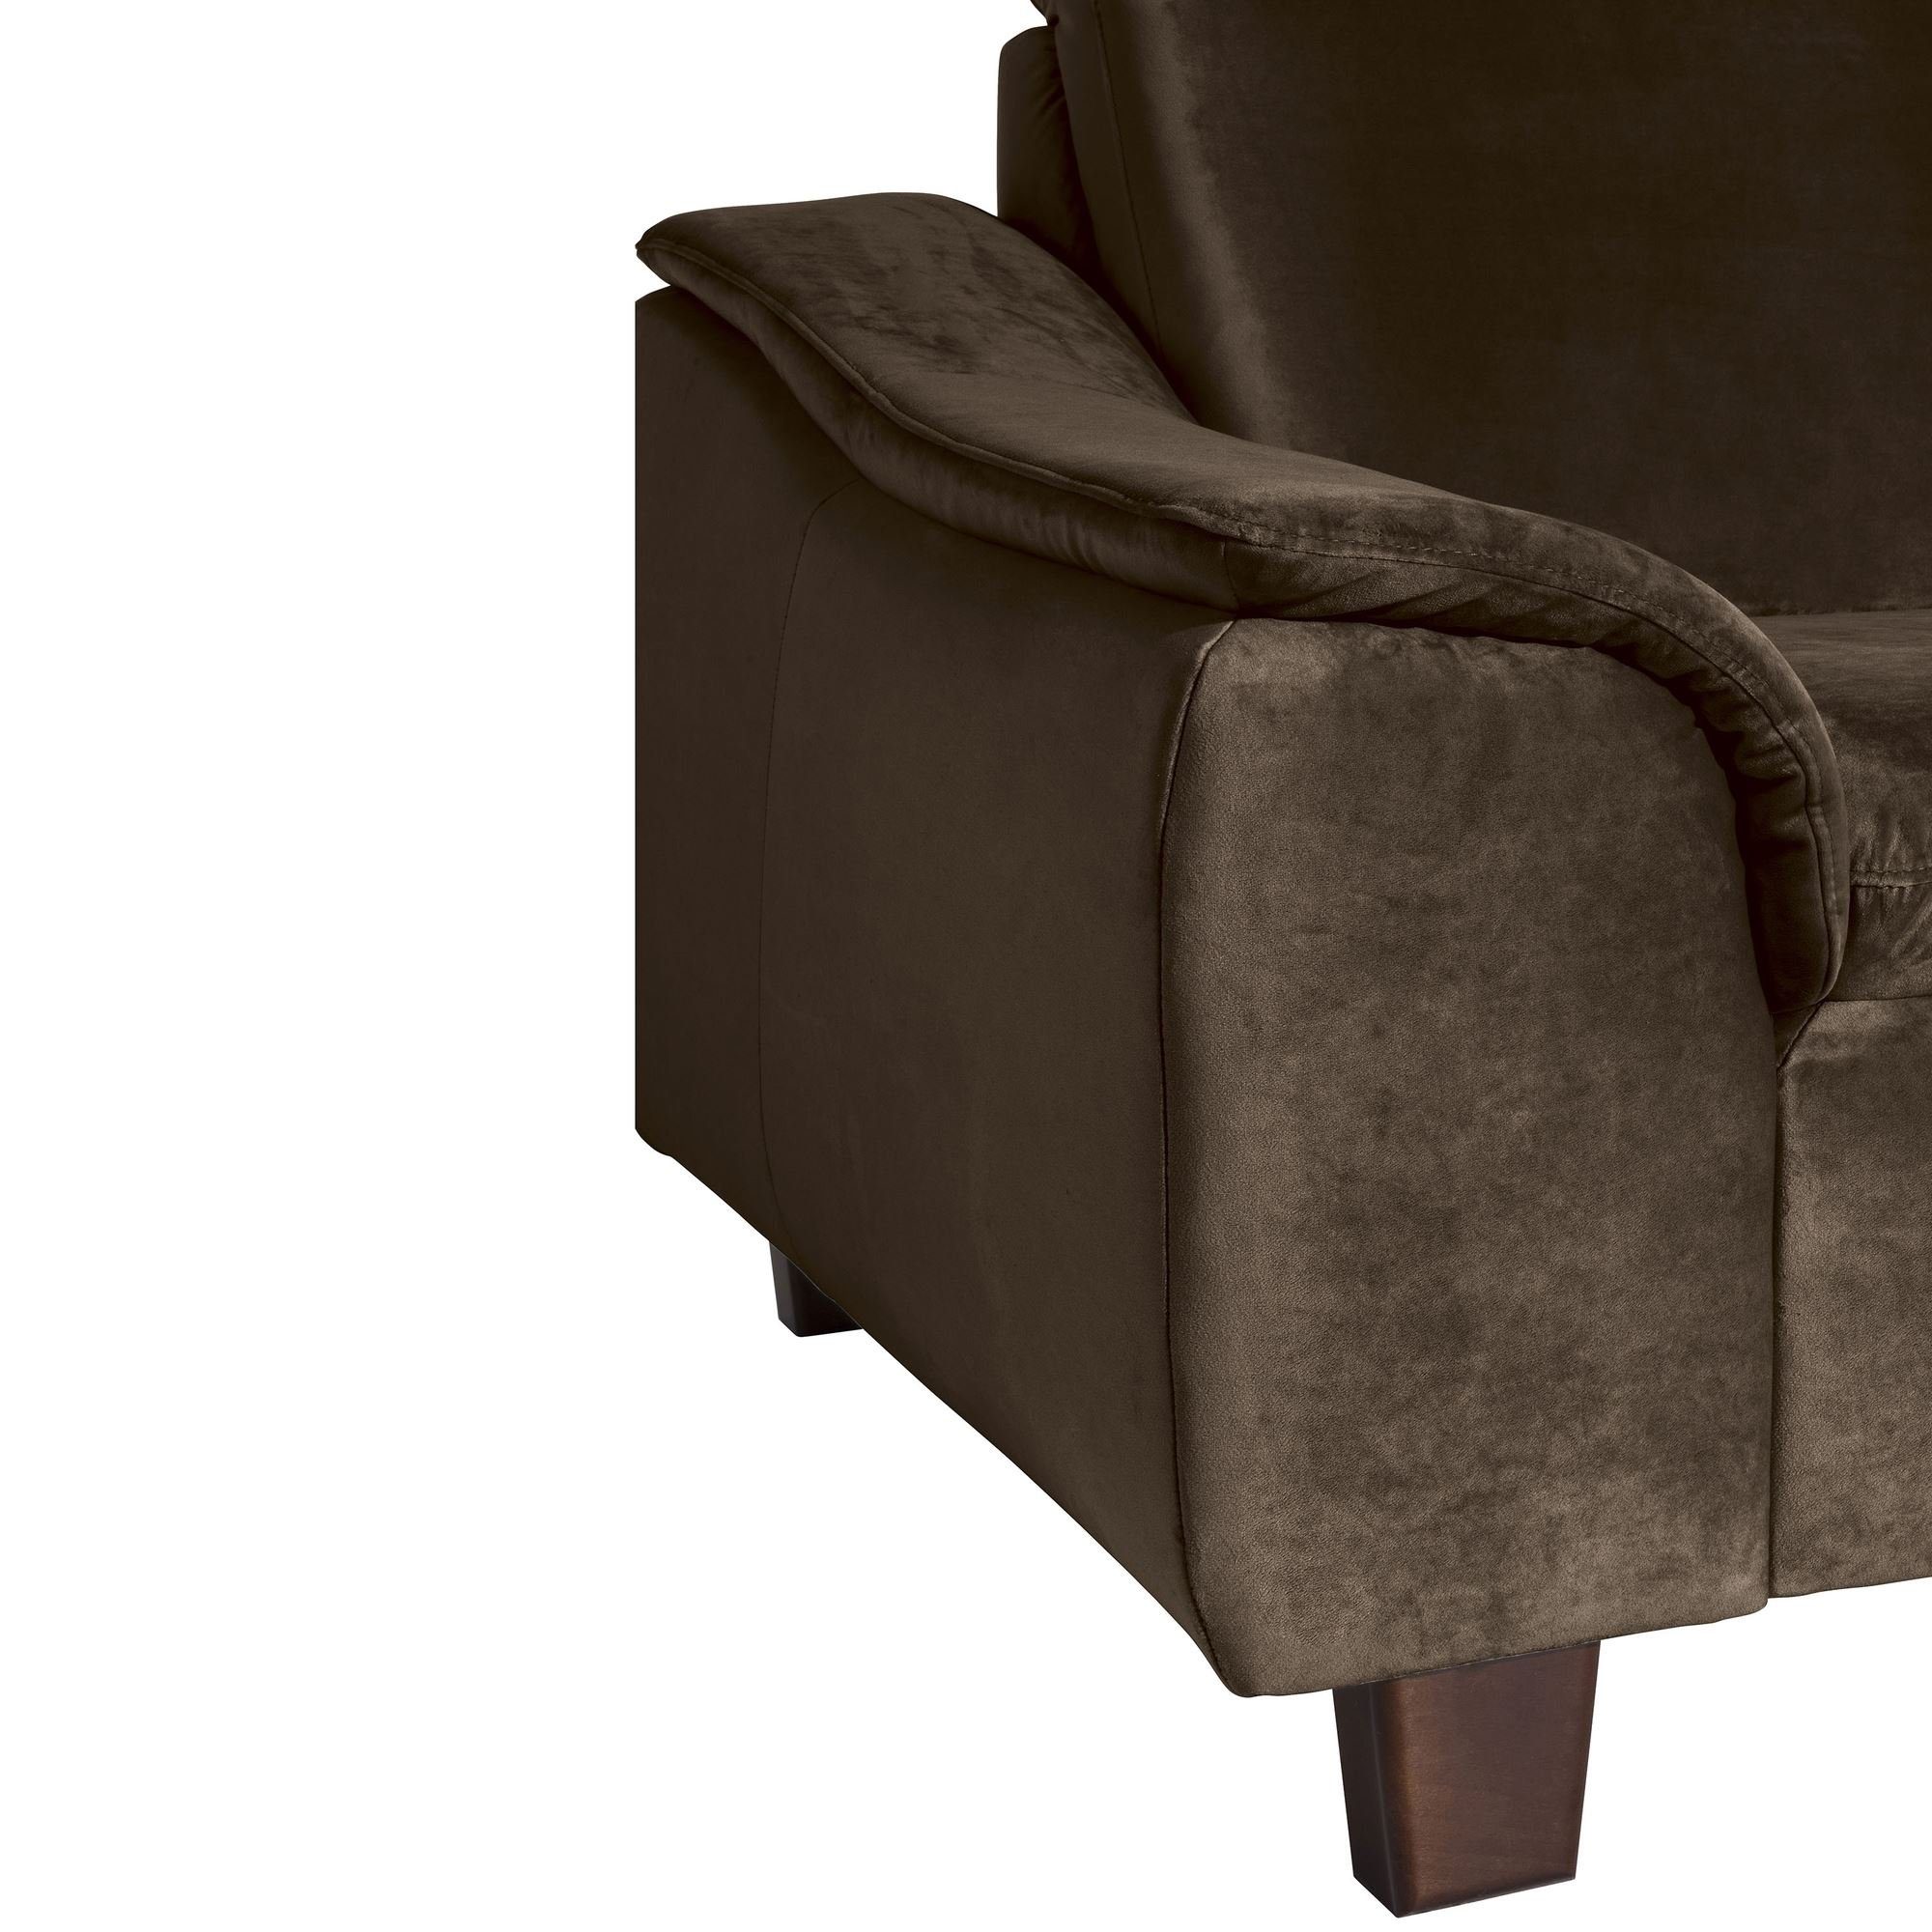 58 Bezug / Sessel Sessel 22976 nussbaum Kostenlosem Kessel dunkel Samtvelours braun Buche aufm inkl. hochwertig (Sparpreis Katti Versand, 1-St), verarbeitet,bequemer Sitz